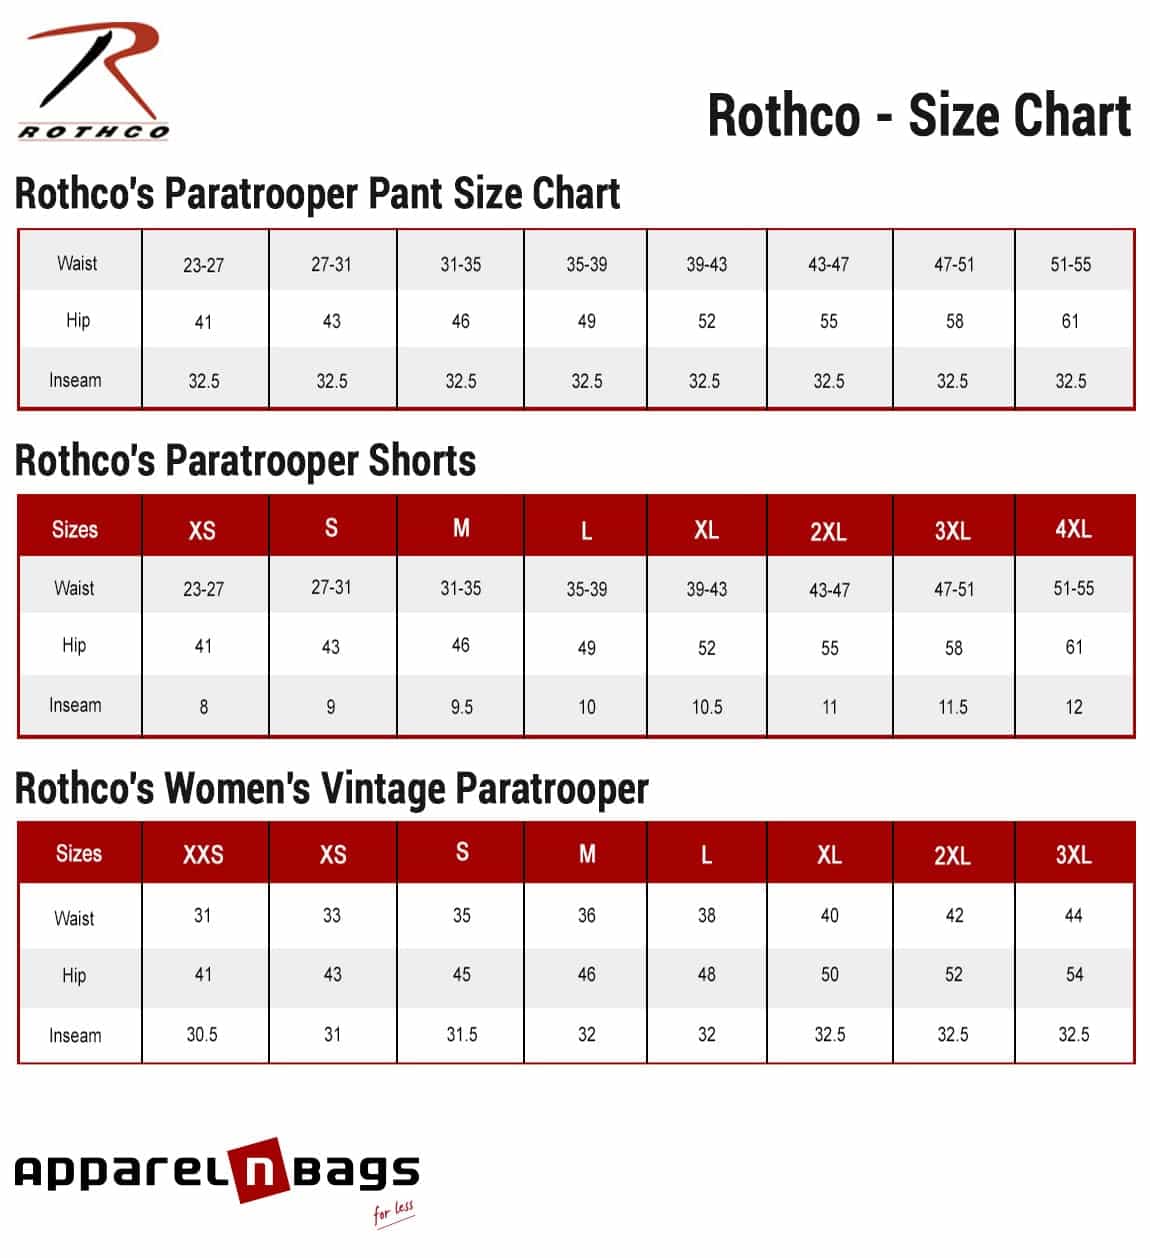 Rothco - Size Chart